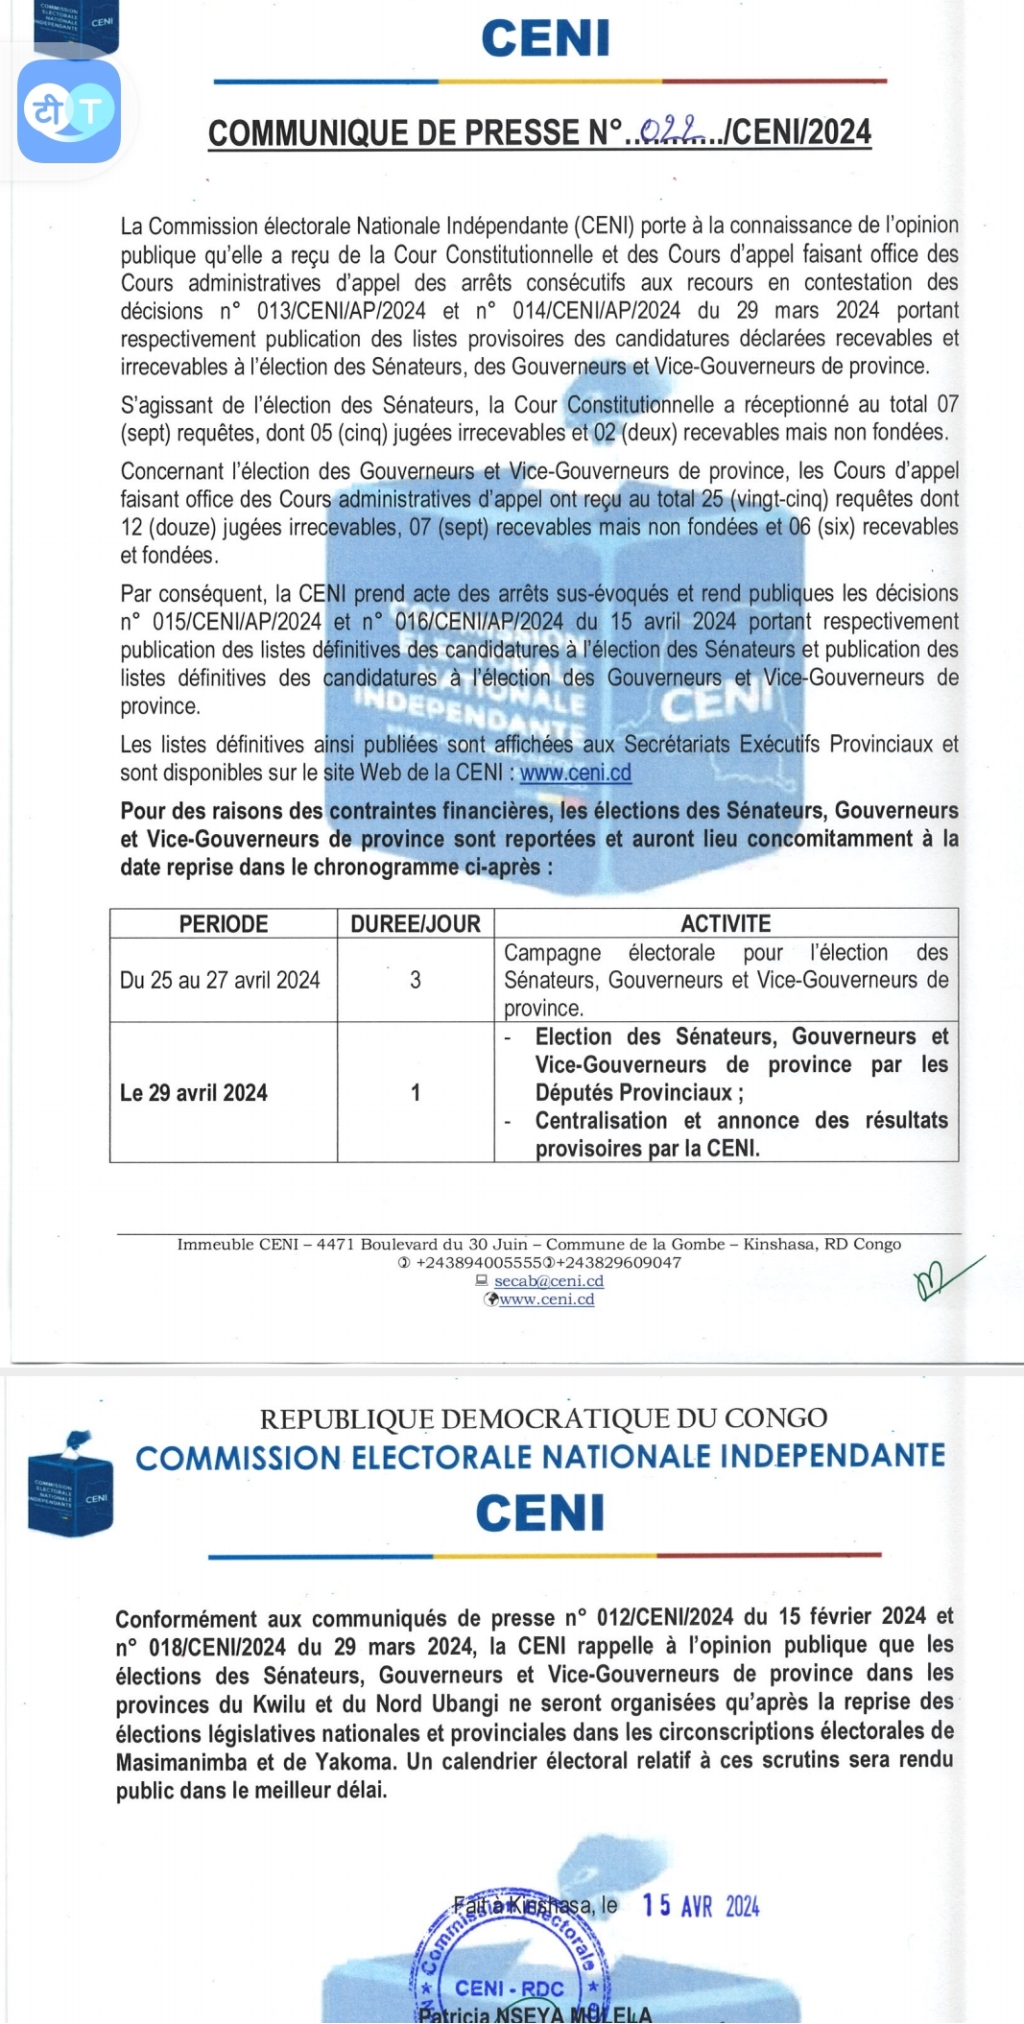 RDC/La Commission électorale Nationale Indépendante (CENI) annonce des mises à jour importantes sur le processus électoral pour les gouverneurs des provinces et sénateurs